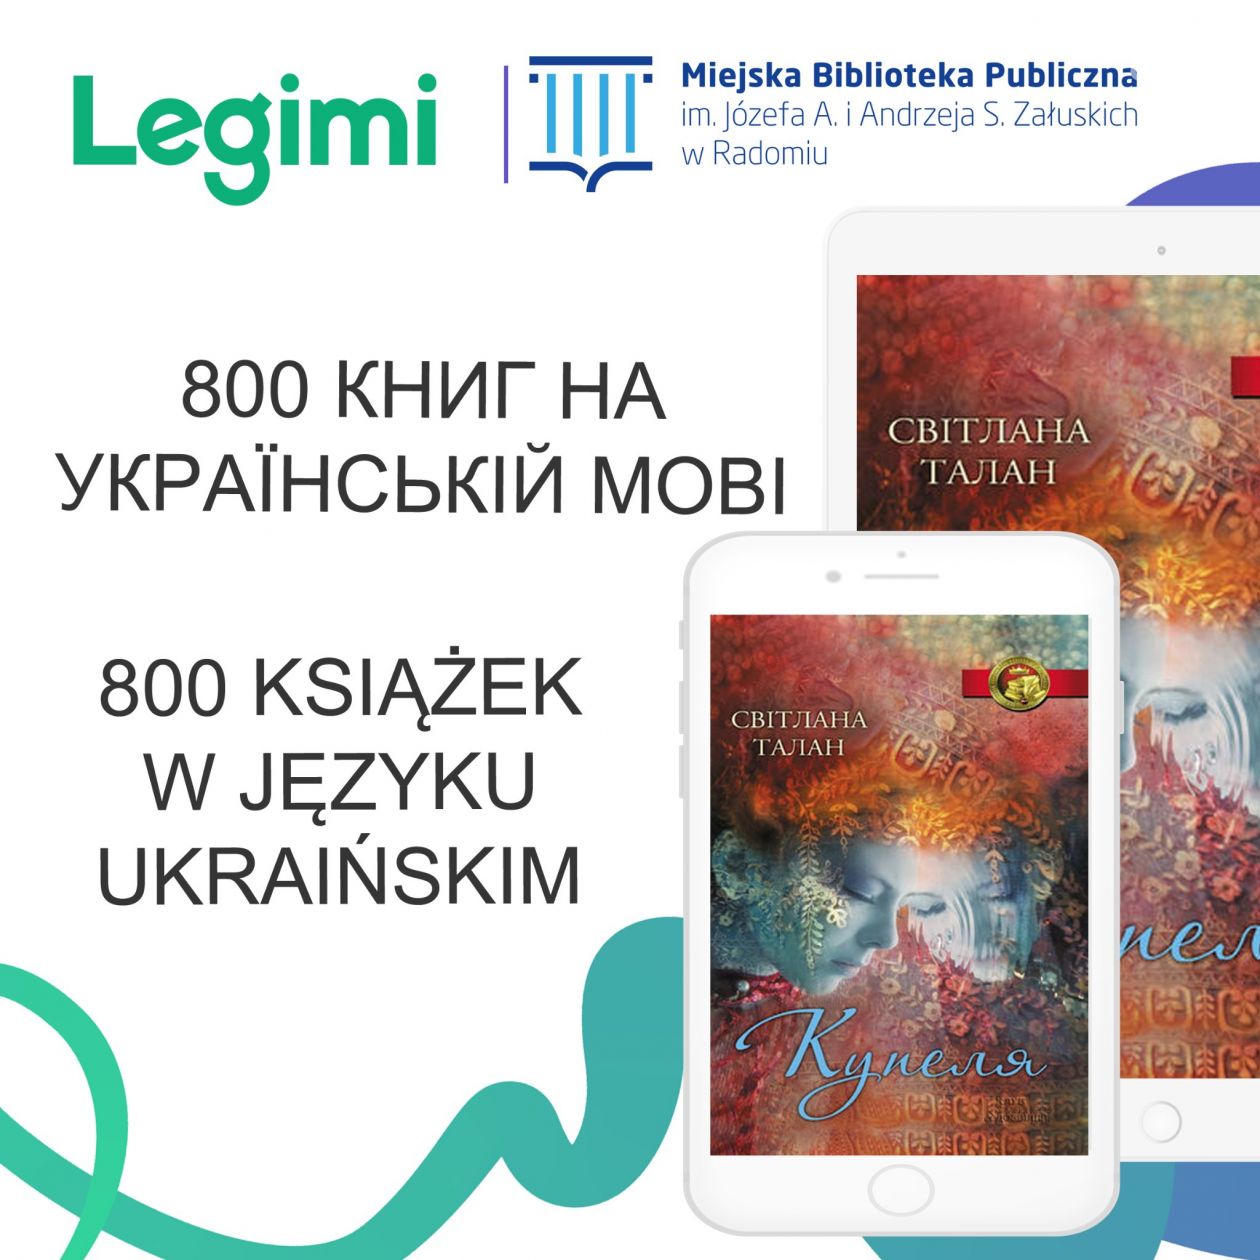 800 książek w języku ukraińskim 